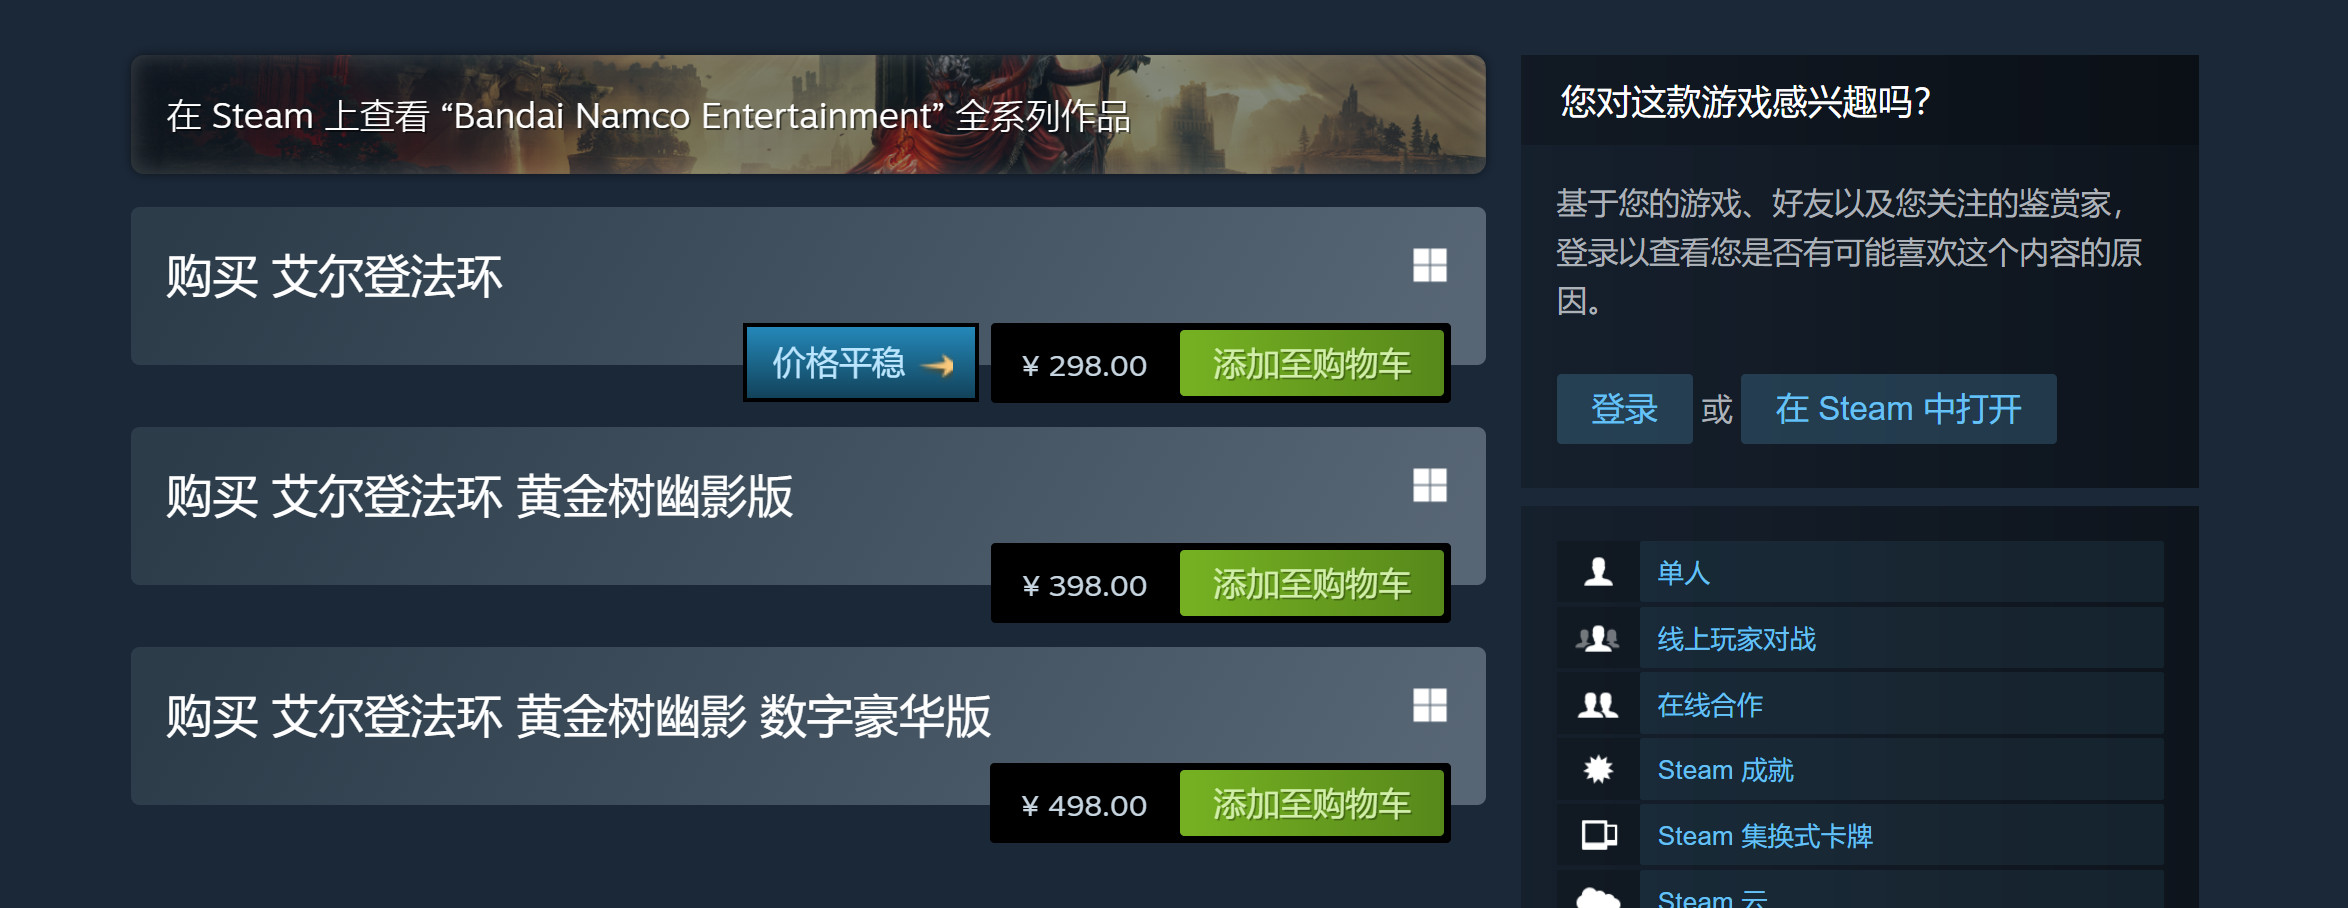 《七龍珠FighterZ》Steam新史低促銷 當前僅售29.7元